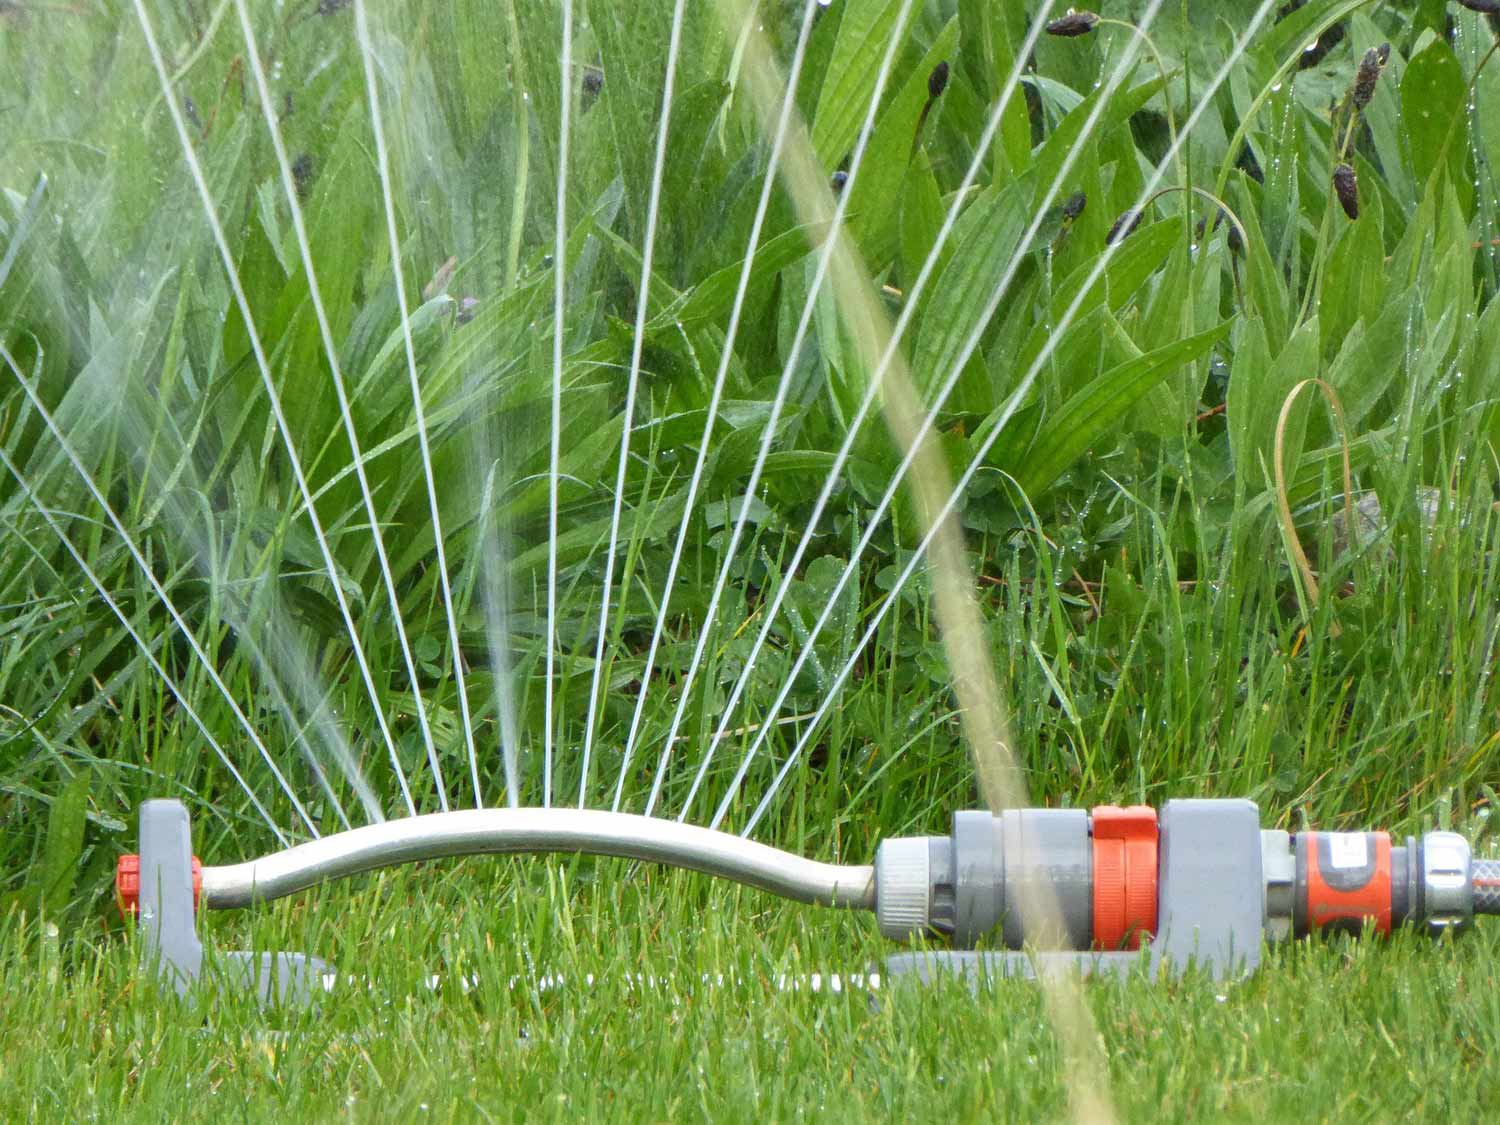 Rasenspreger Bewässerungsanlage Sprinkleranlage Beregnungsanlage Wassersprenger Rasenbewässerungssystem Regner